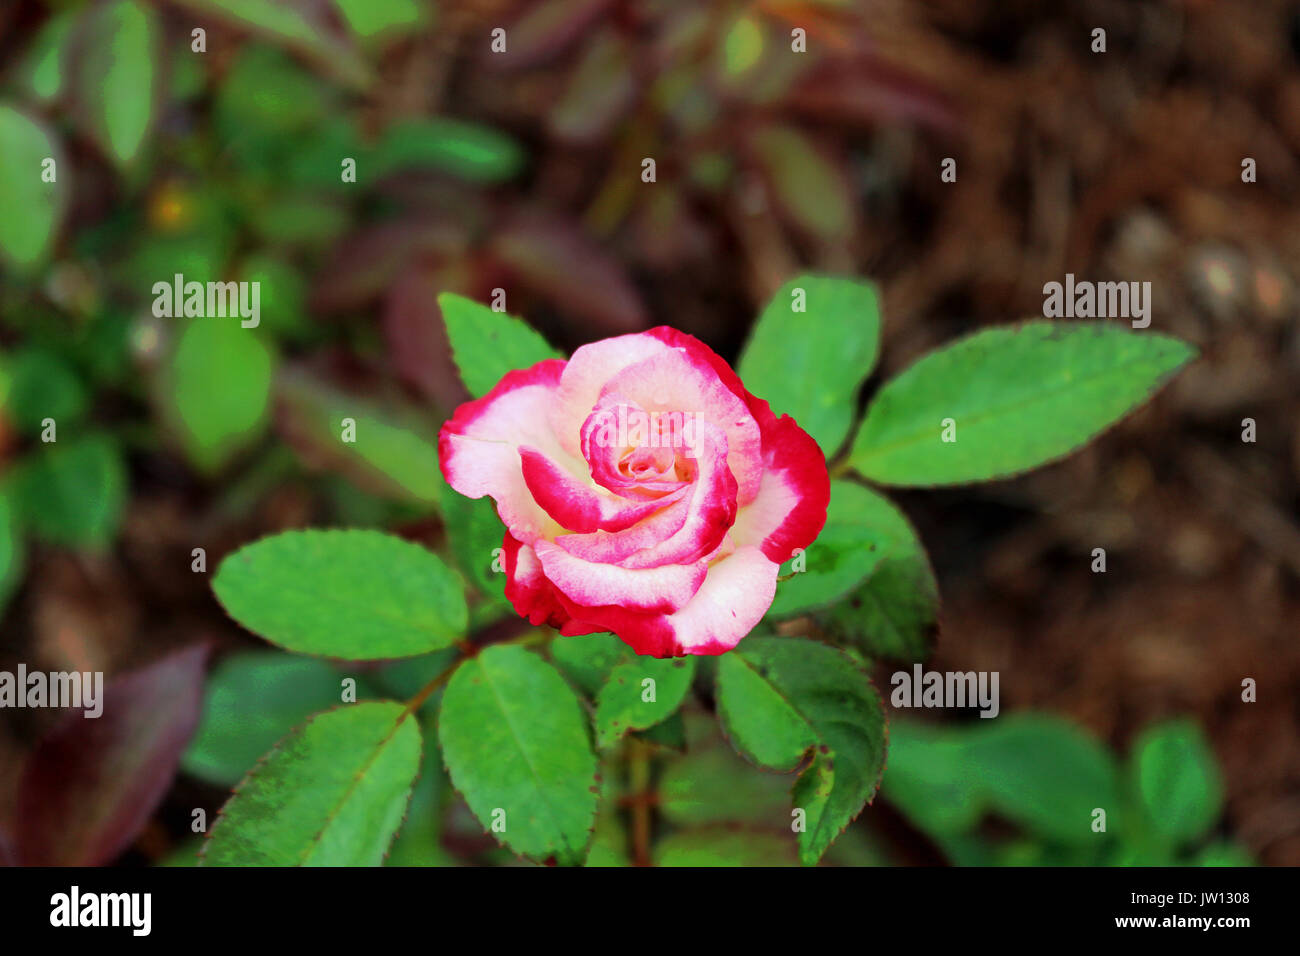 Un petit blanc / rouge / rose rose avec des feuilles vertes. Banque D'Images